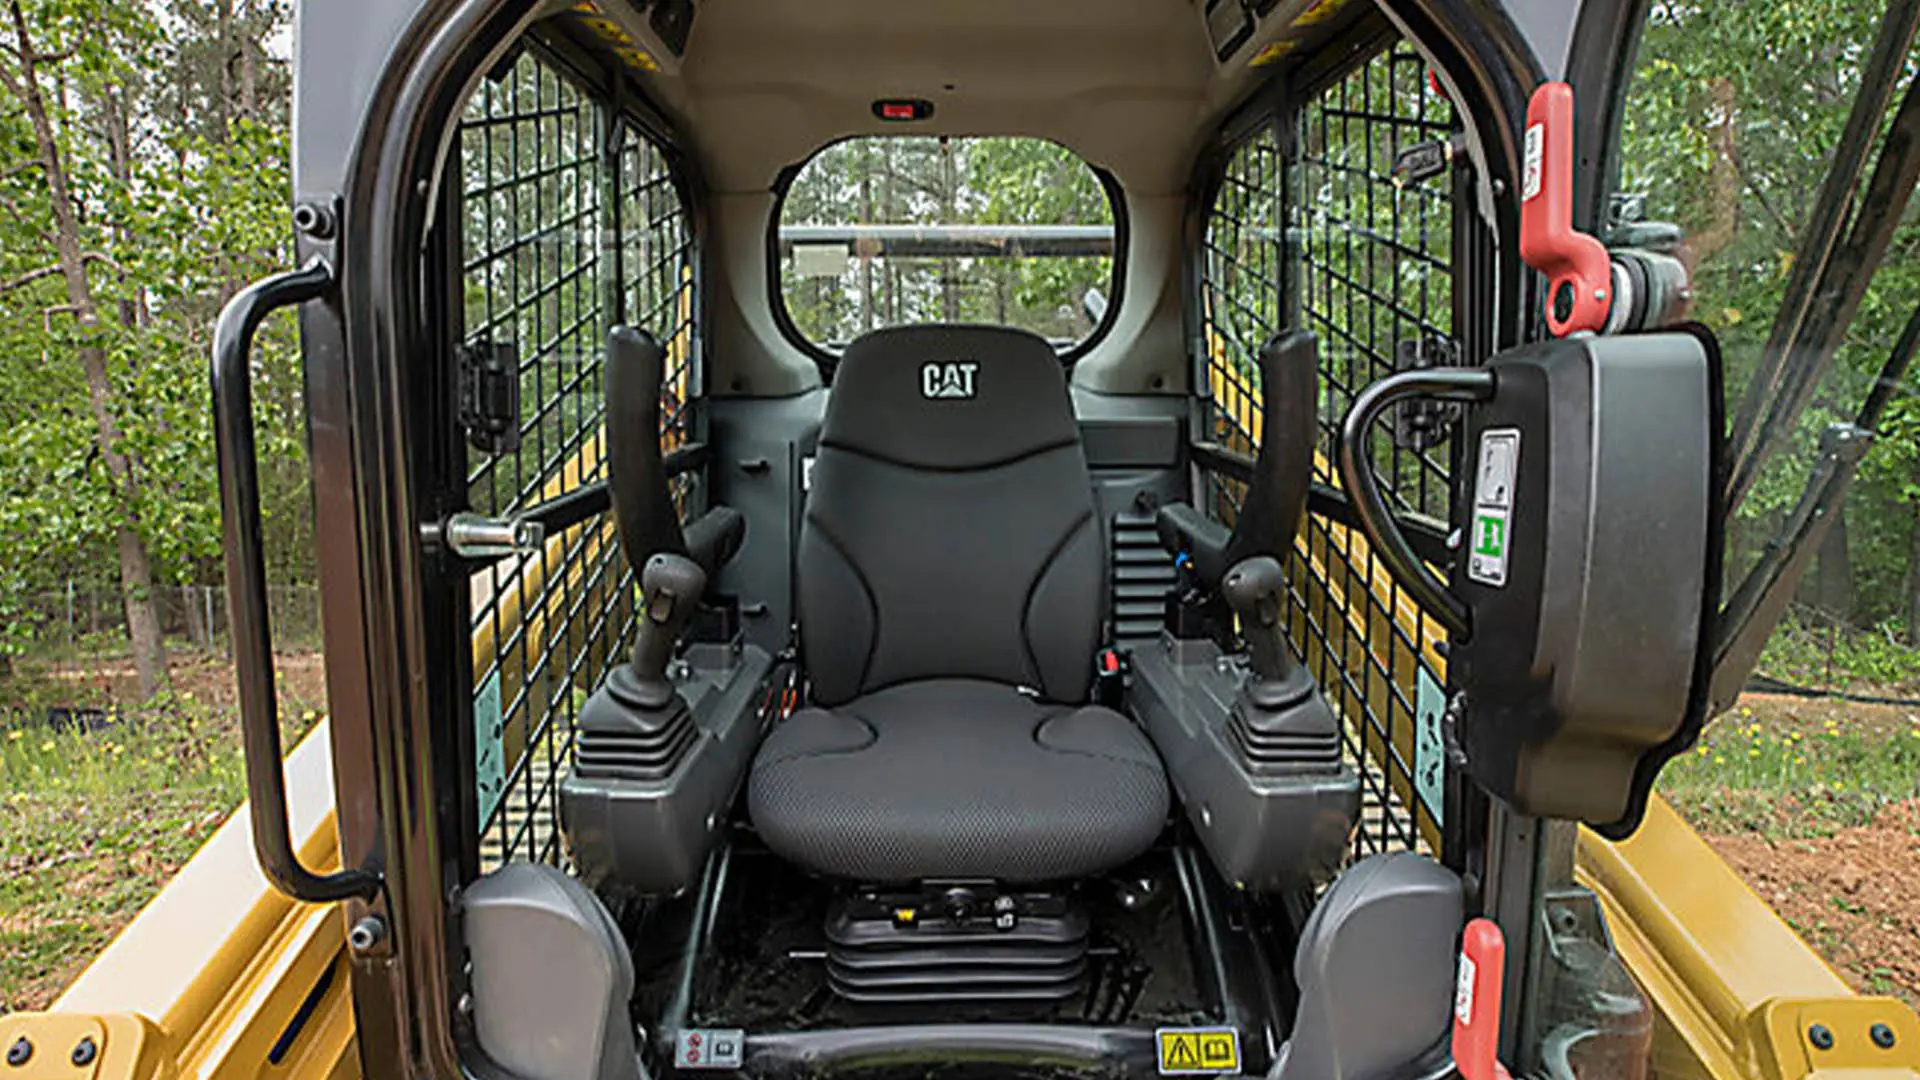 The Cat 259D3 cab interior.